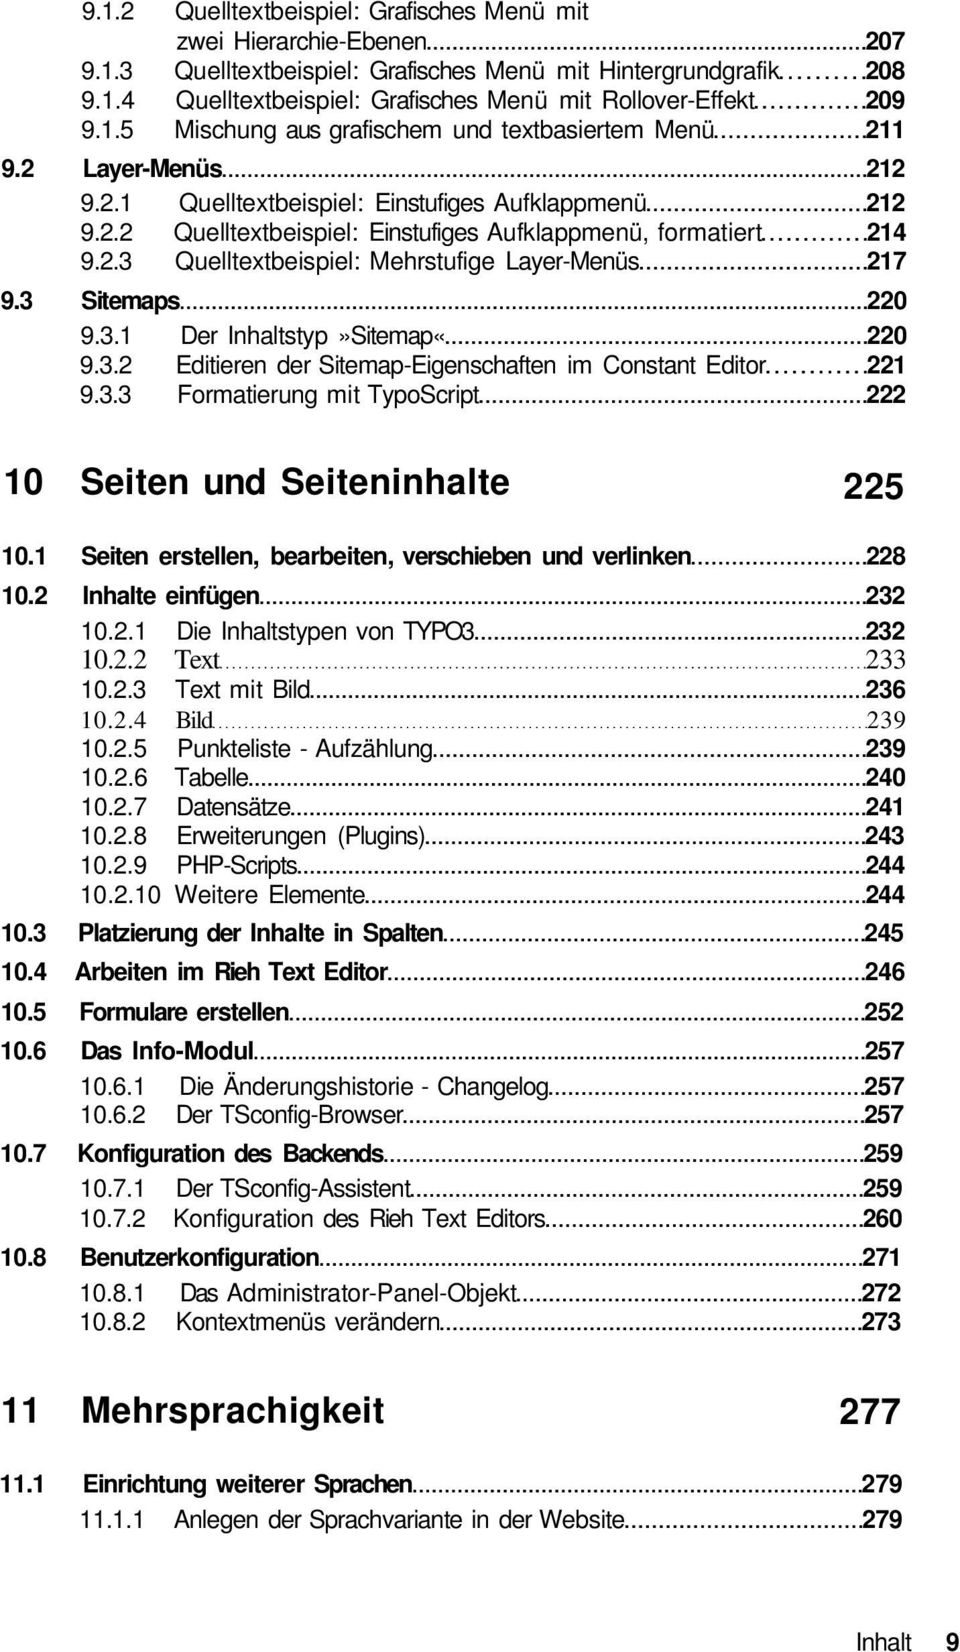 3 Sitemaps 220 9.3.1 Der Inhaltstyp»Sitemap«220 9.3.2 Editieren der Sitemap-Eigenschaften im Constant Editor 221 9.3.3 Formatierung mit TypoScript 222 10 Seiten und Seiteninhalte 225 10.